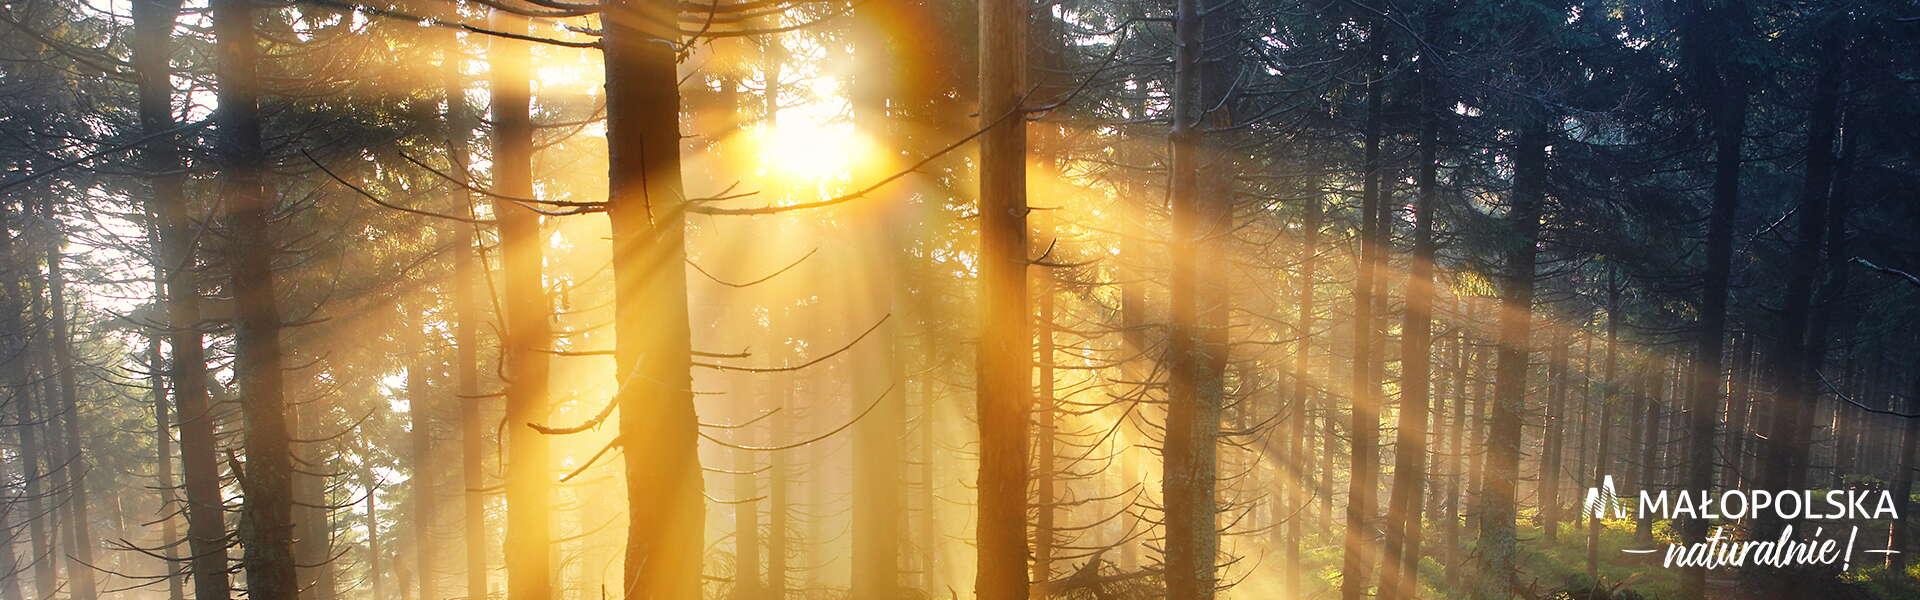 Promienie słoneczne przeświecające przez drzewa w lesie, w prawym dolnym rogu log – napis Małopolska naturalnie